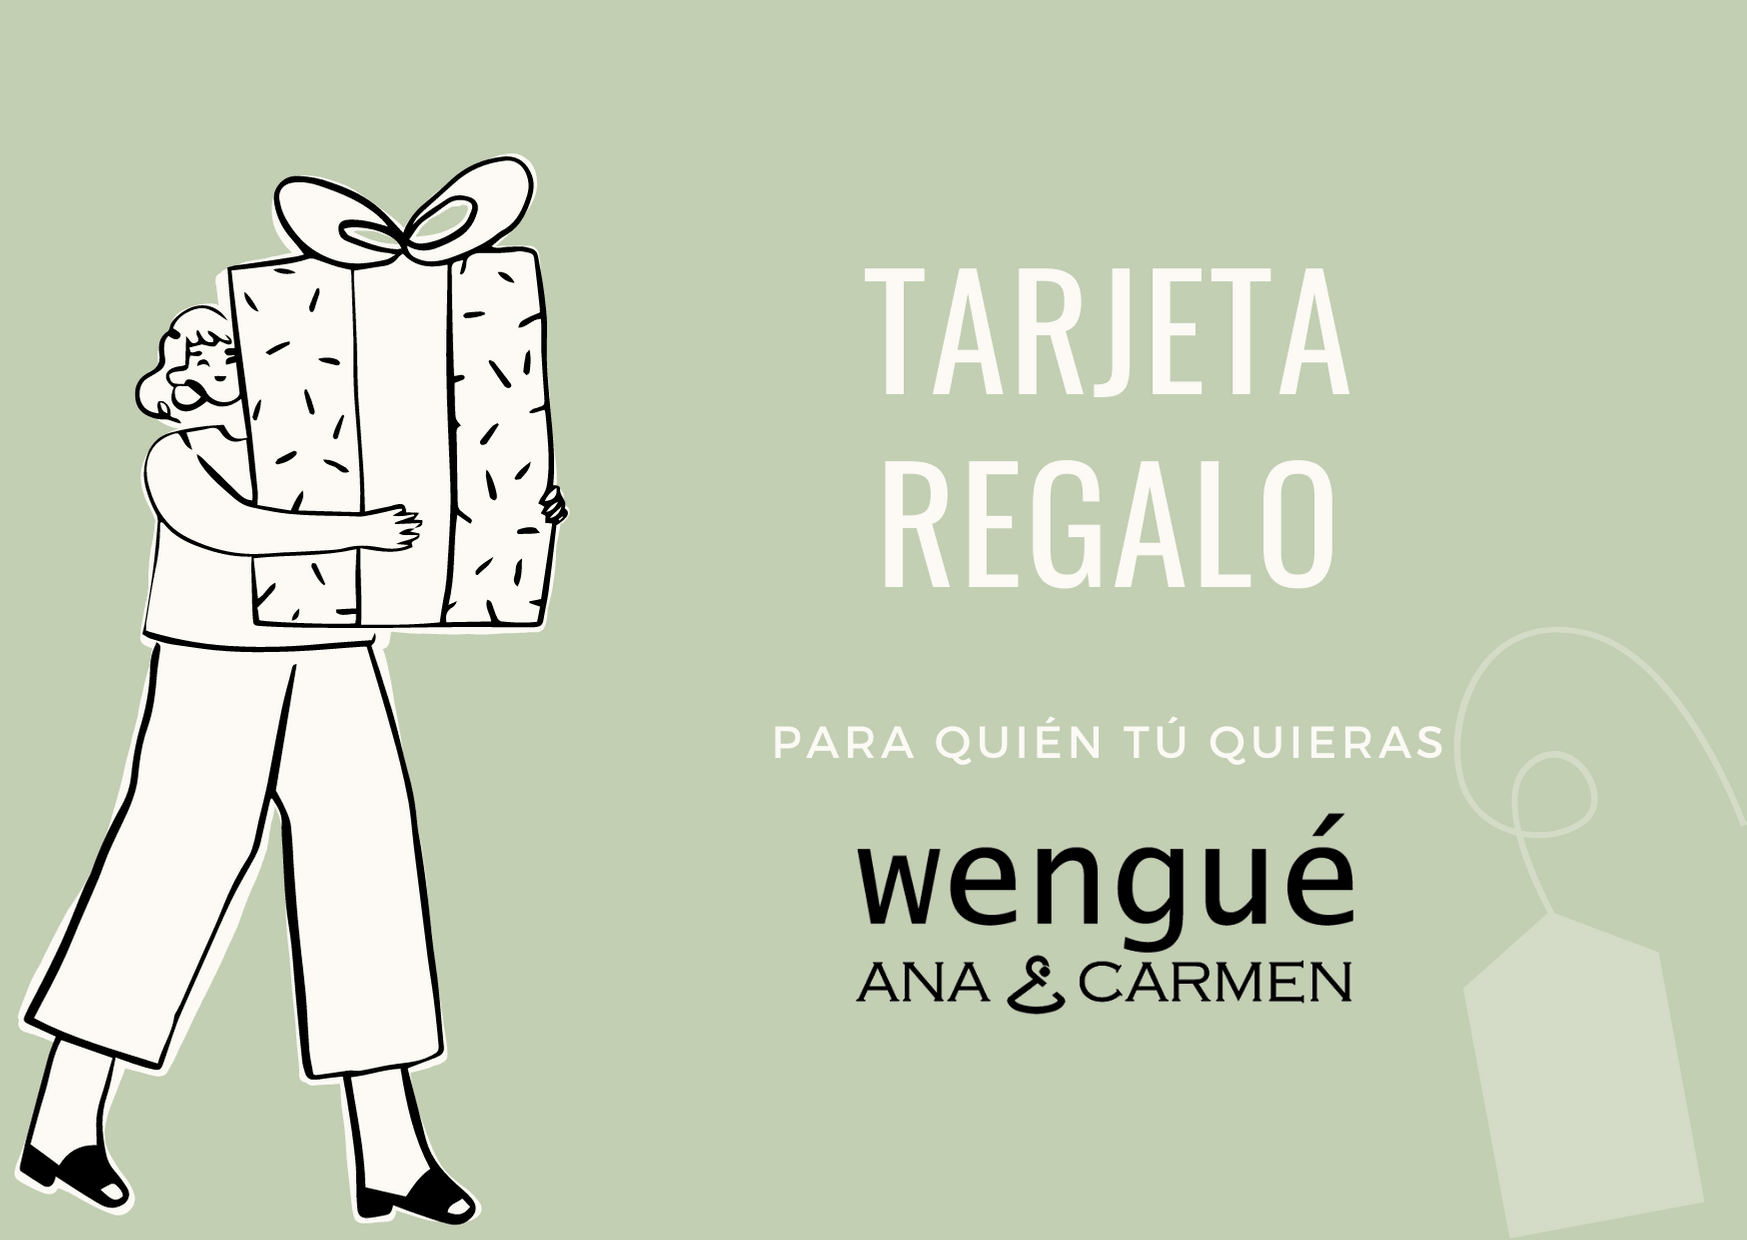 Tarjeta de regalo Wengué Ana y Carmen - Wengué Ana y Carmen - Tarjeta de regalo - Wengué Ana y Carmen 